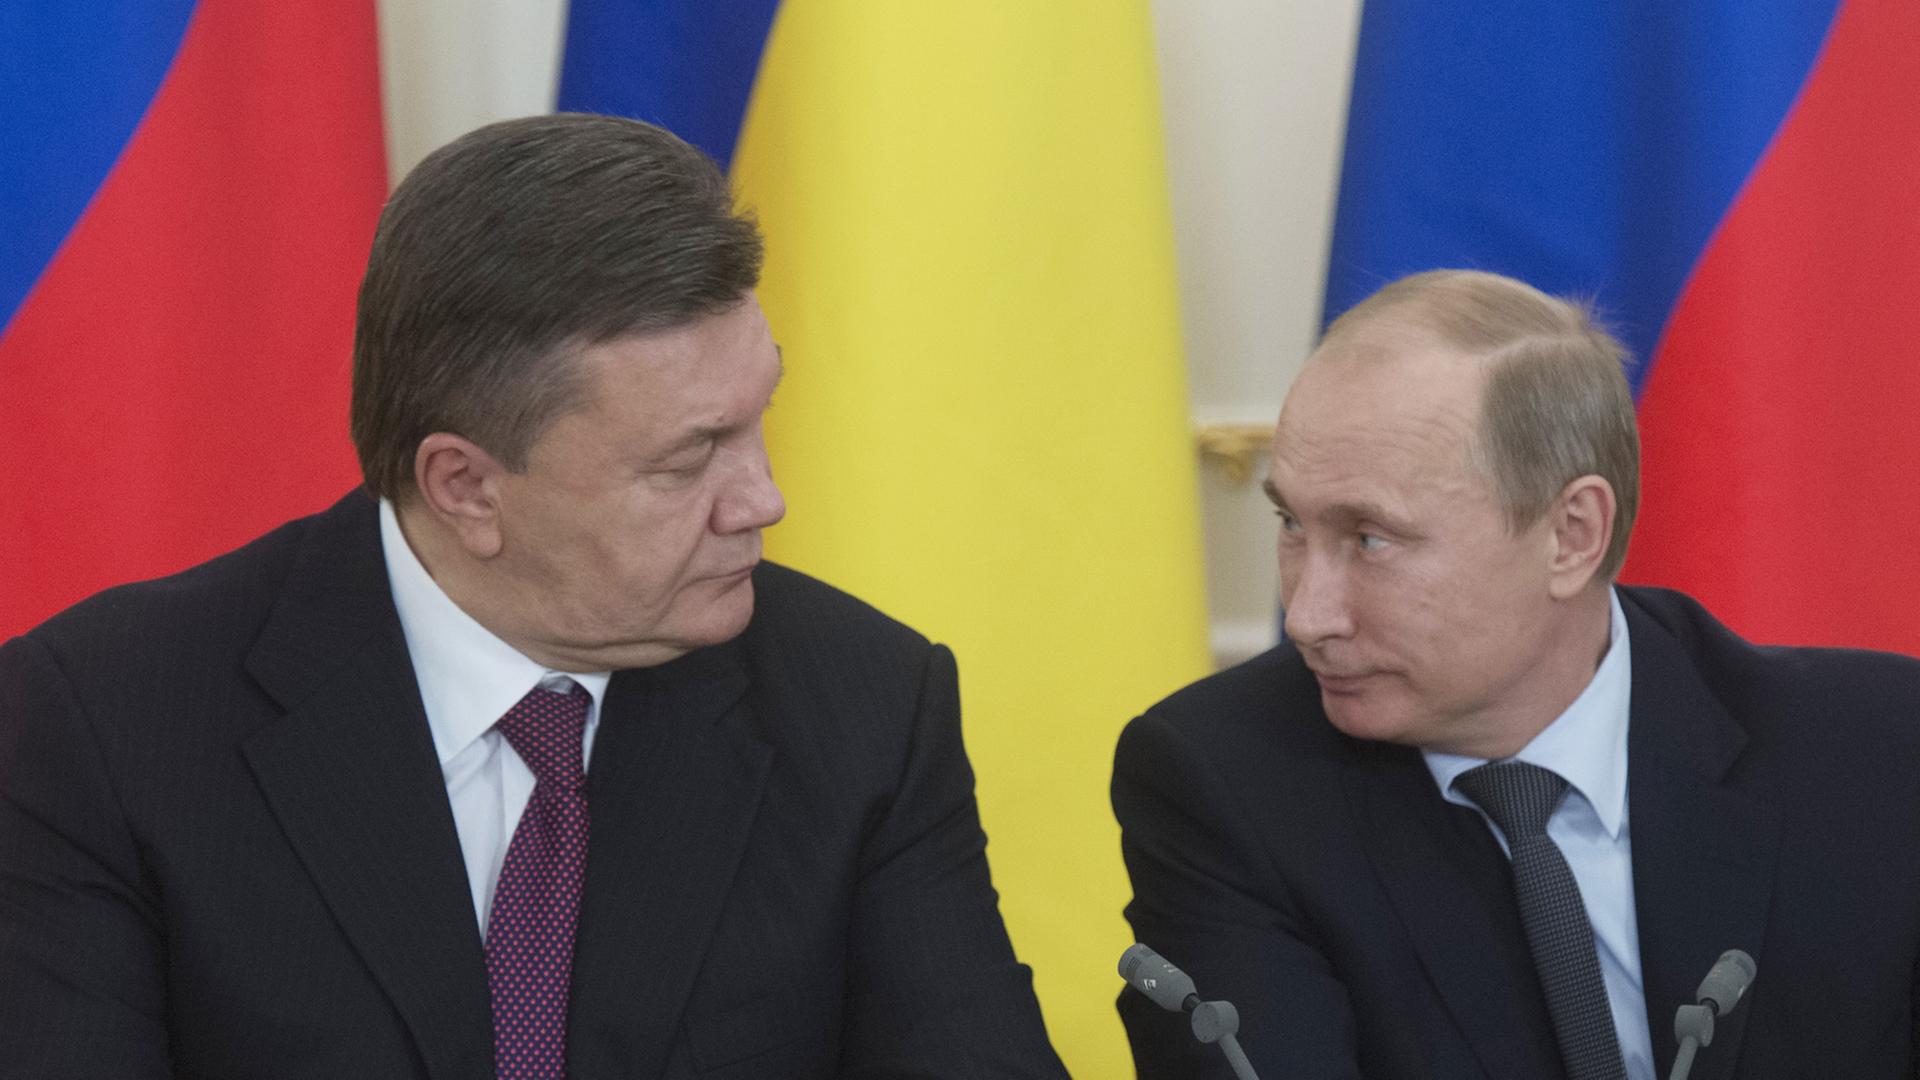 Der ukrainische Präsident Vktor Janukowitsch und sein russischer Amtskollege Wladimir Putin sitzen vor Flaggen ihrer jeweiligen Länder.